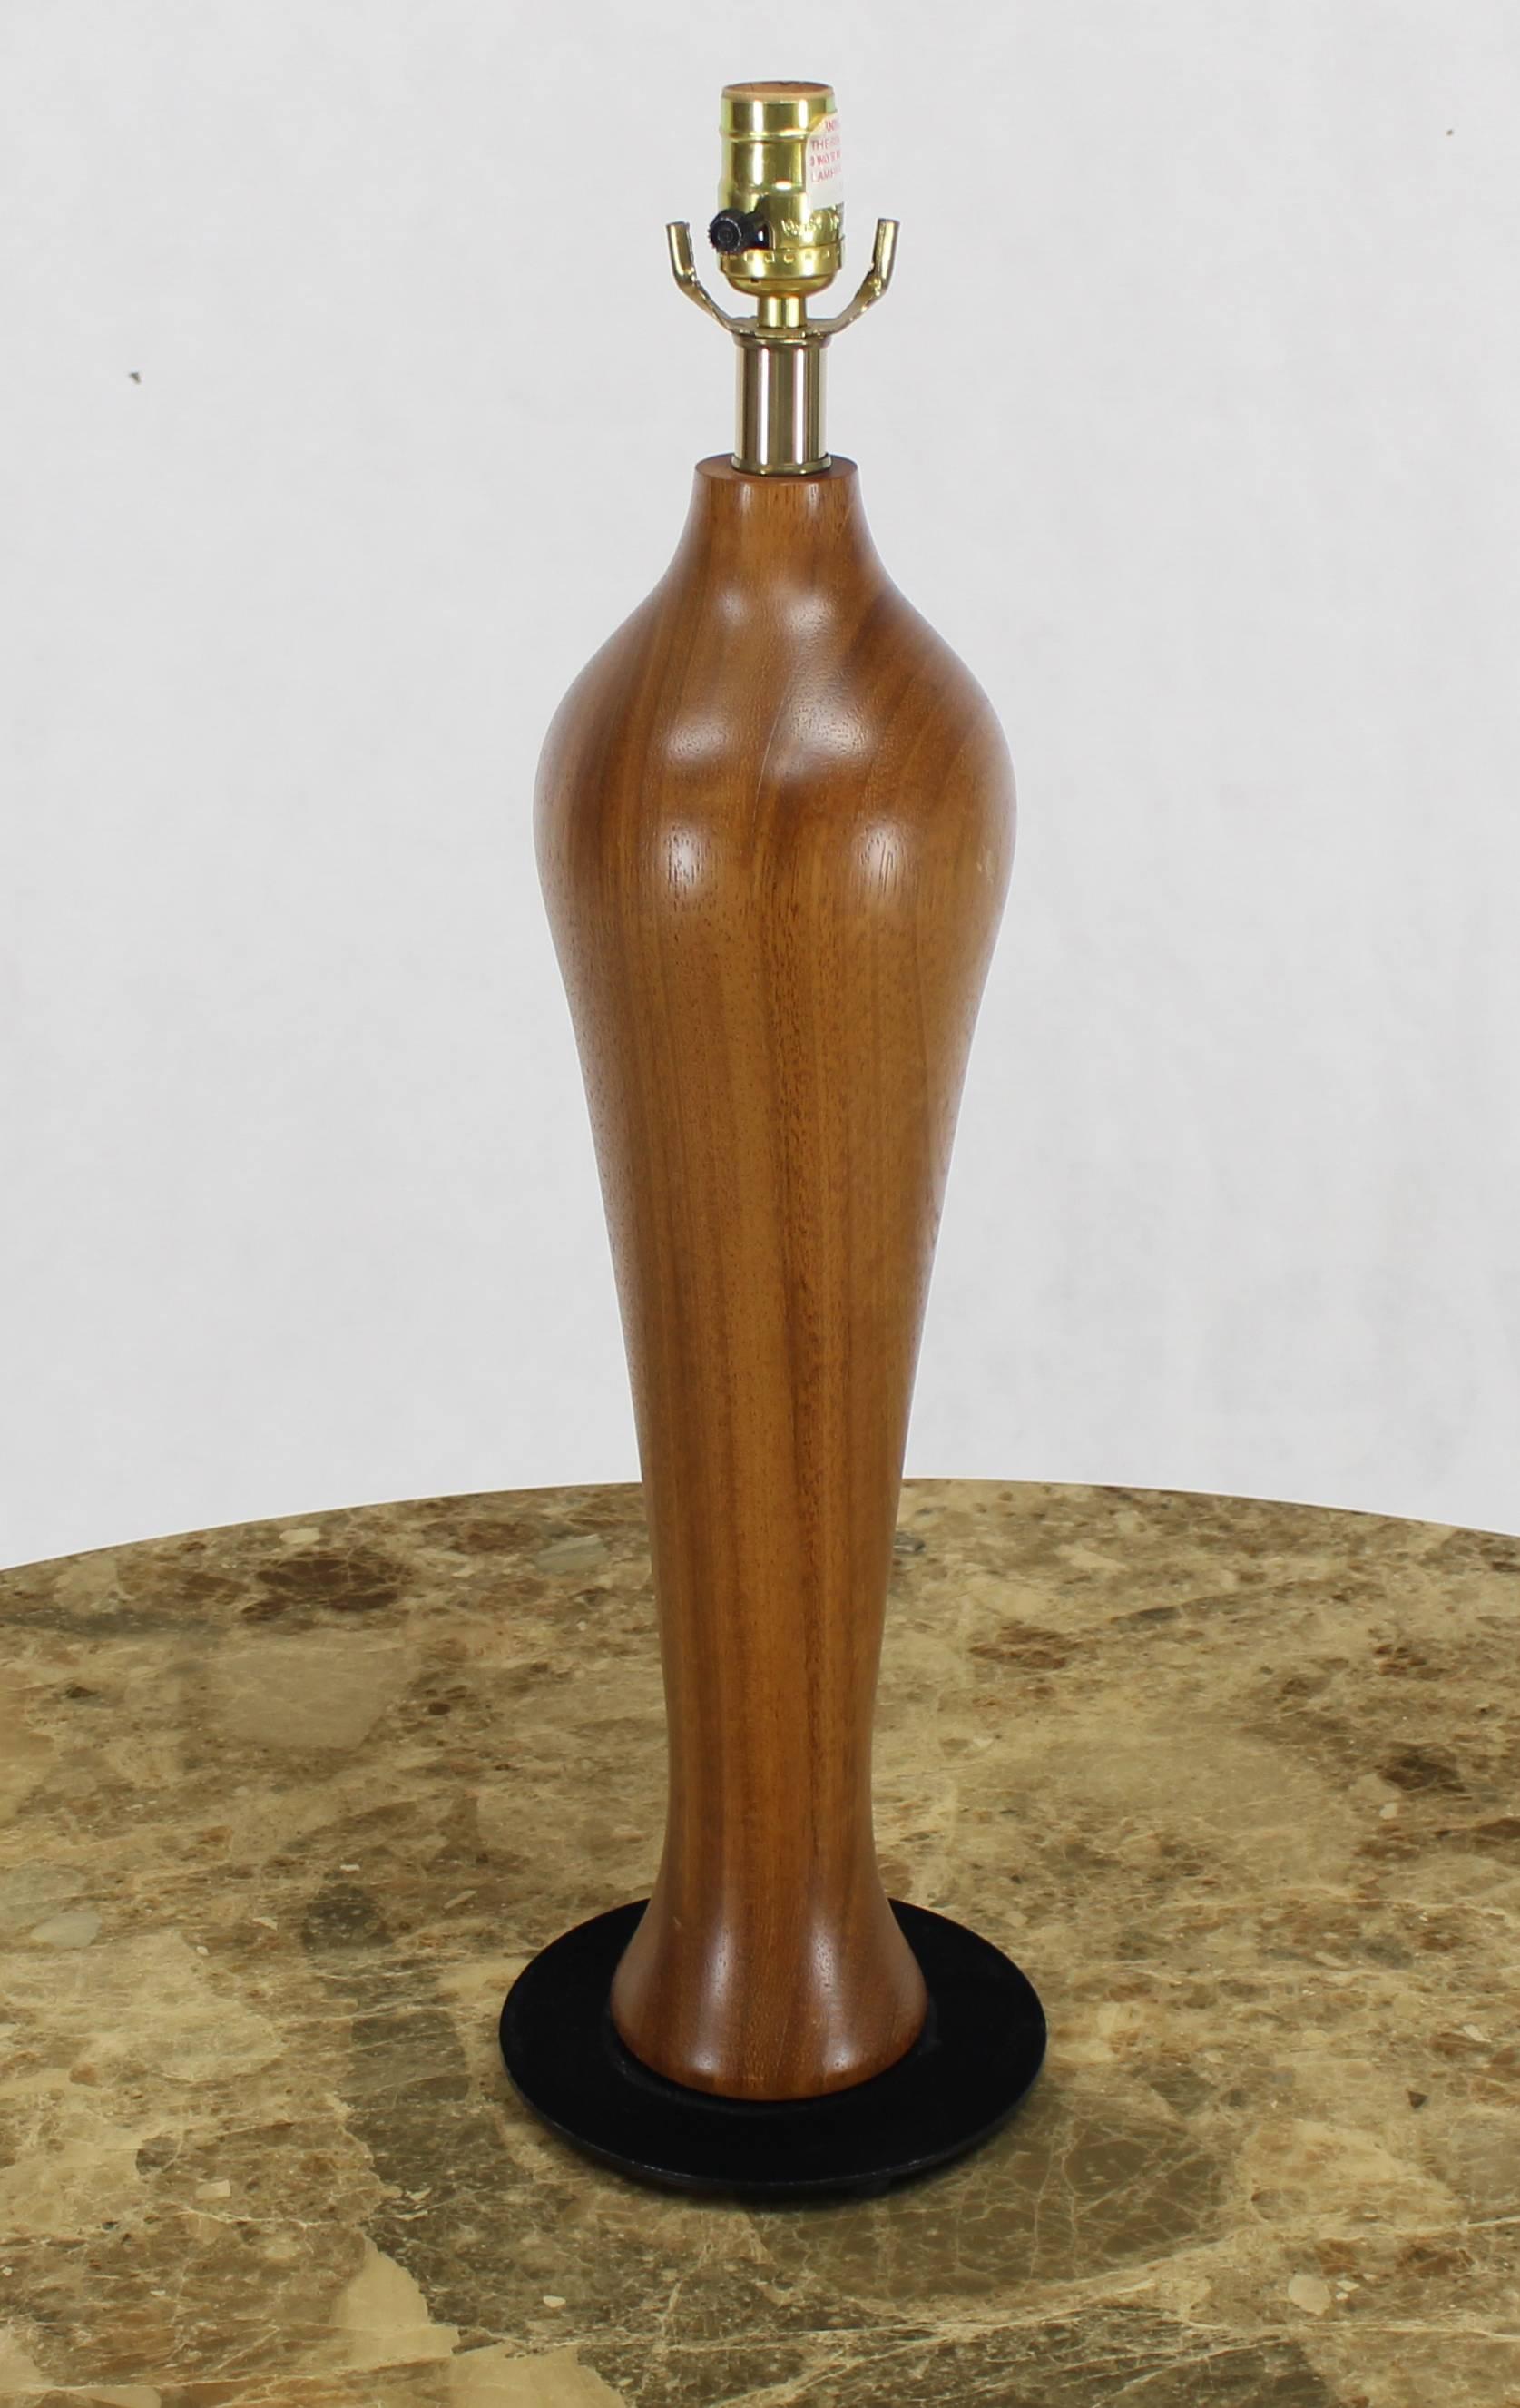 Midcentury Danish modern turned teak or walnut table lamp.
 